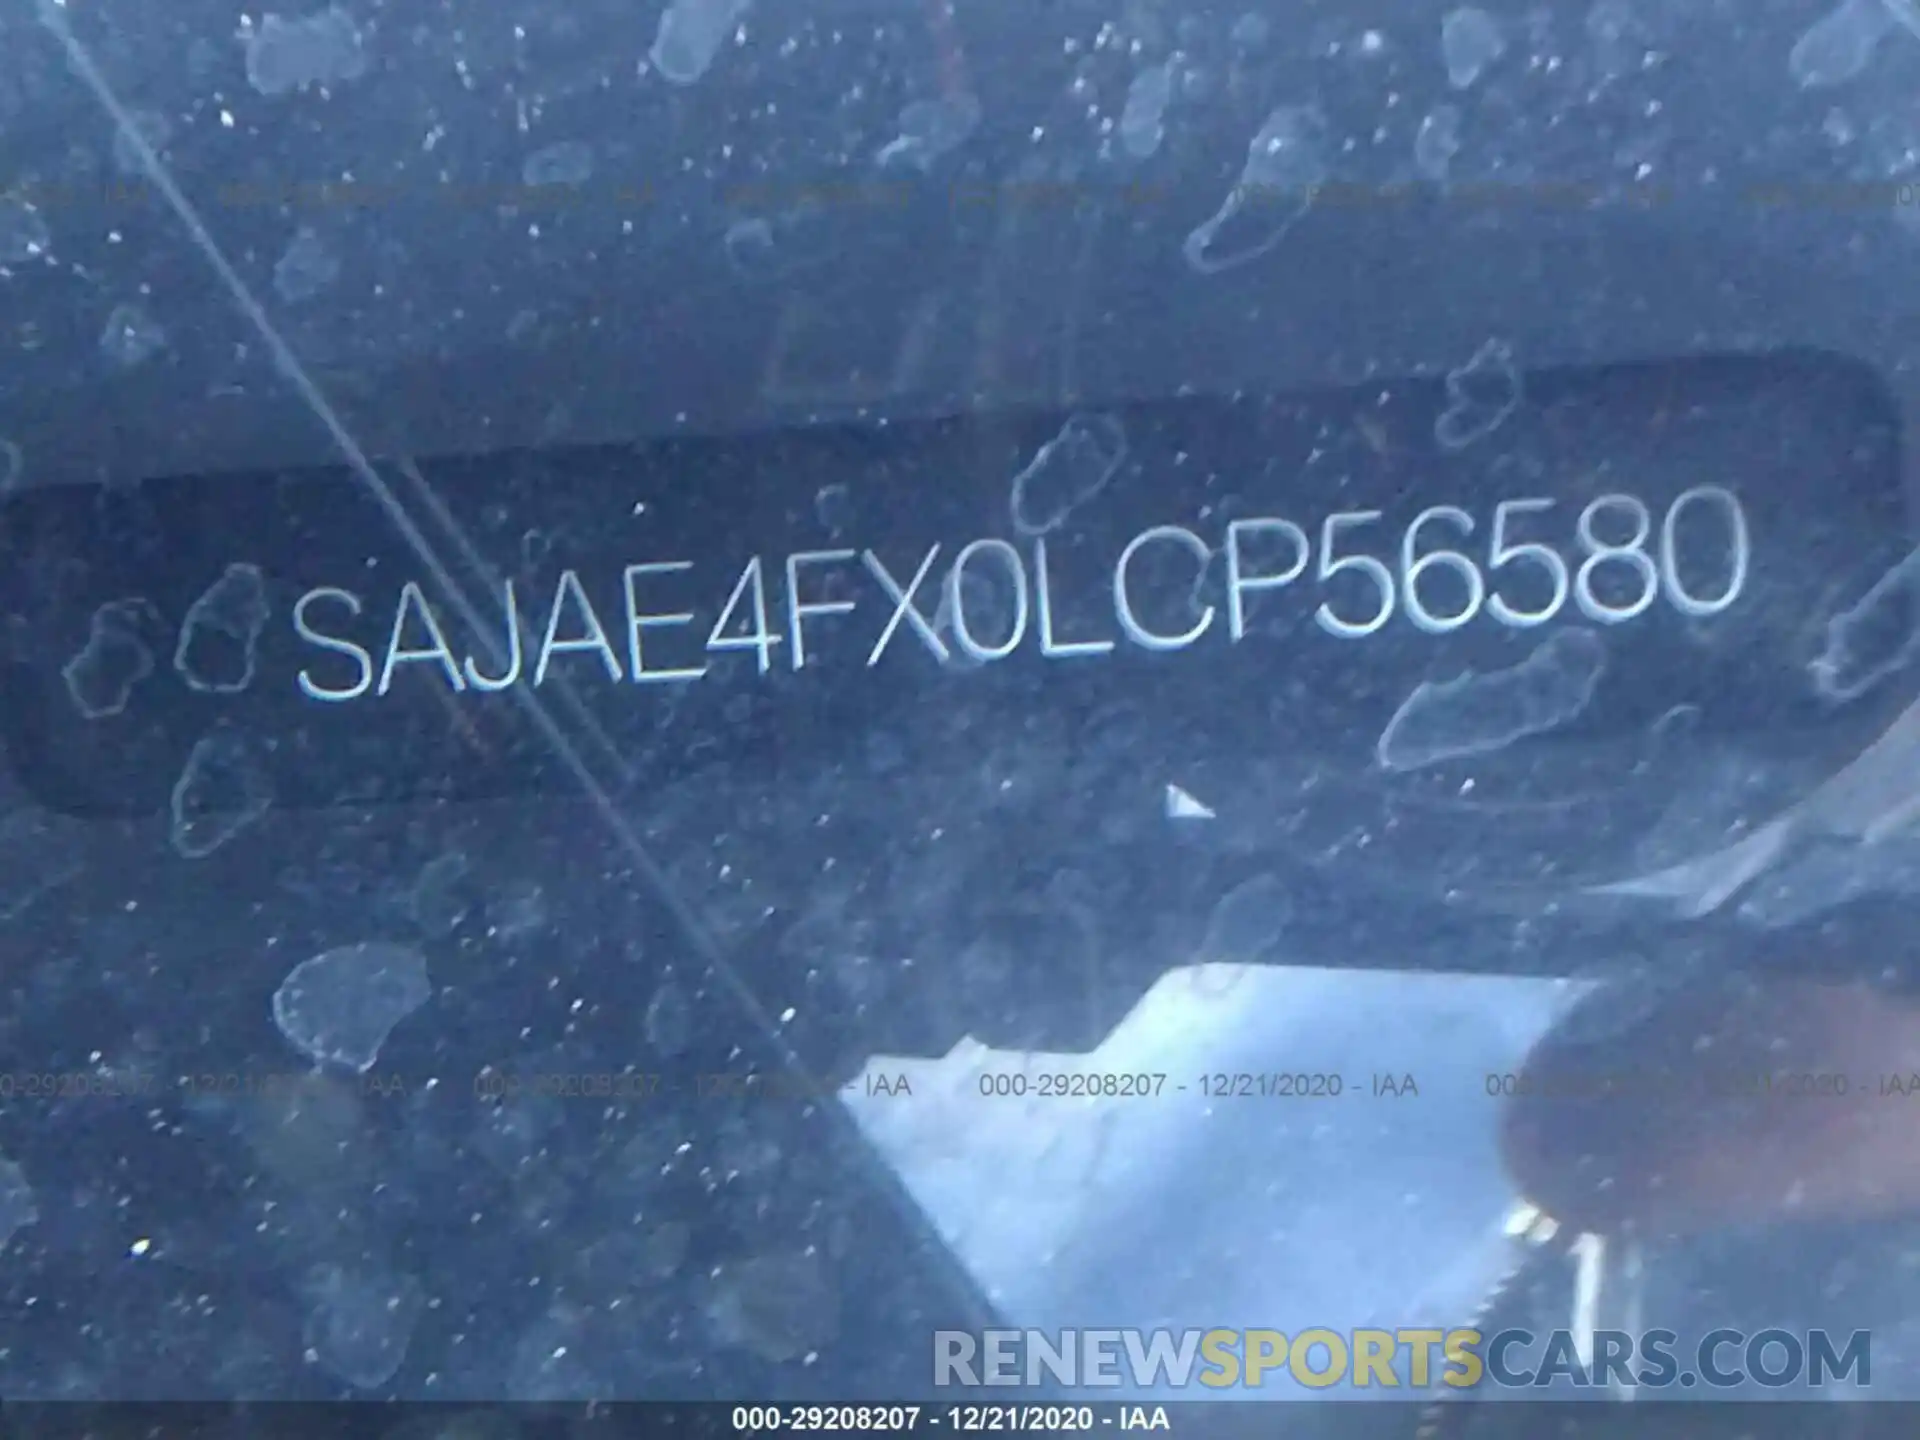 9 Photograph of a damaged car SAJAE4FX0LCP56580 JAGUAR XE 2020